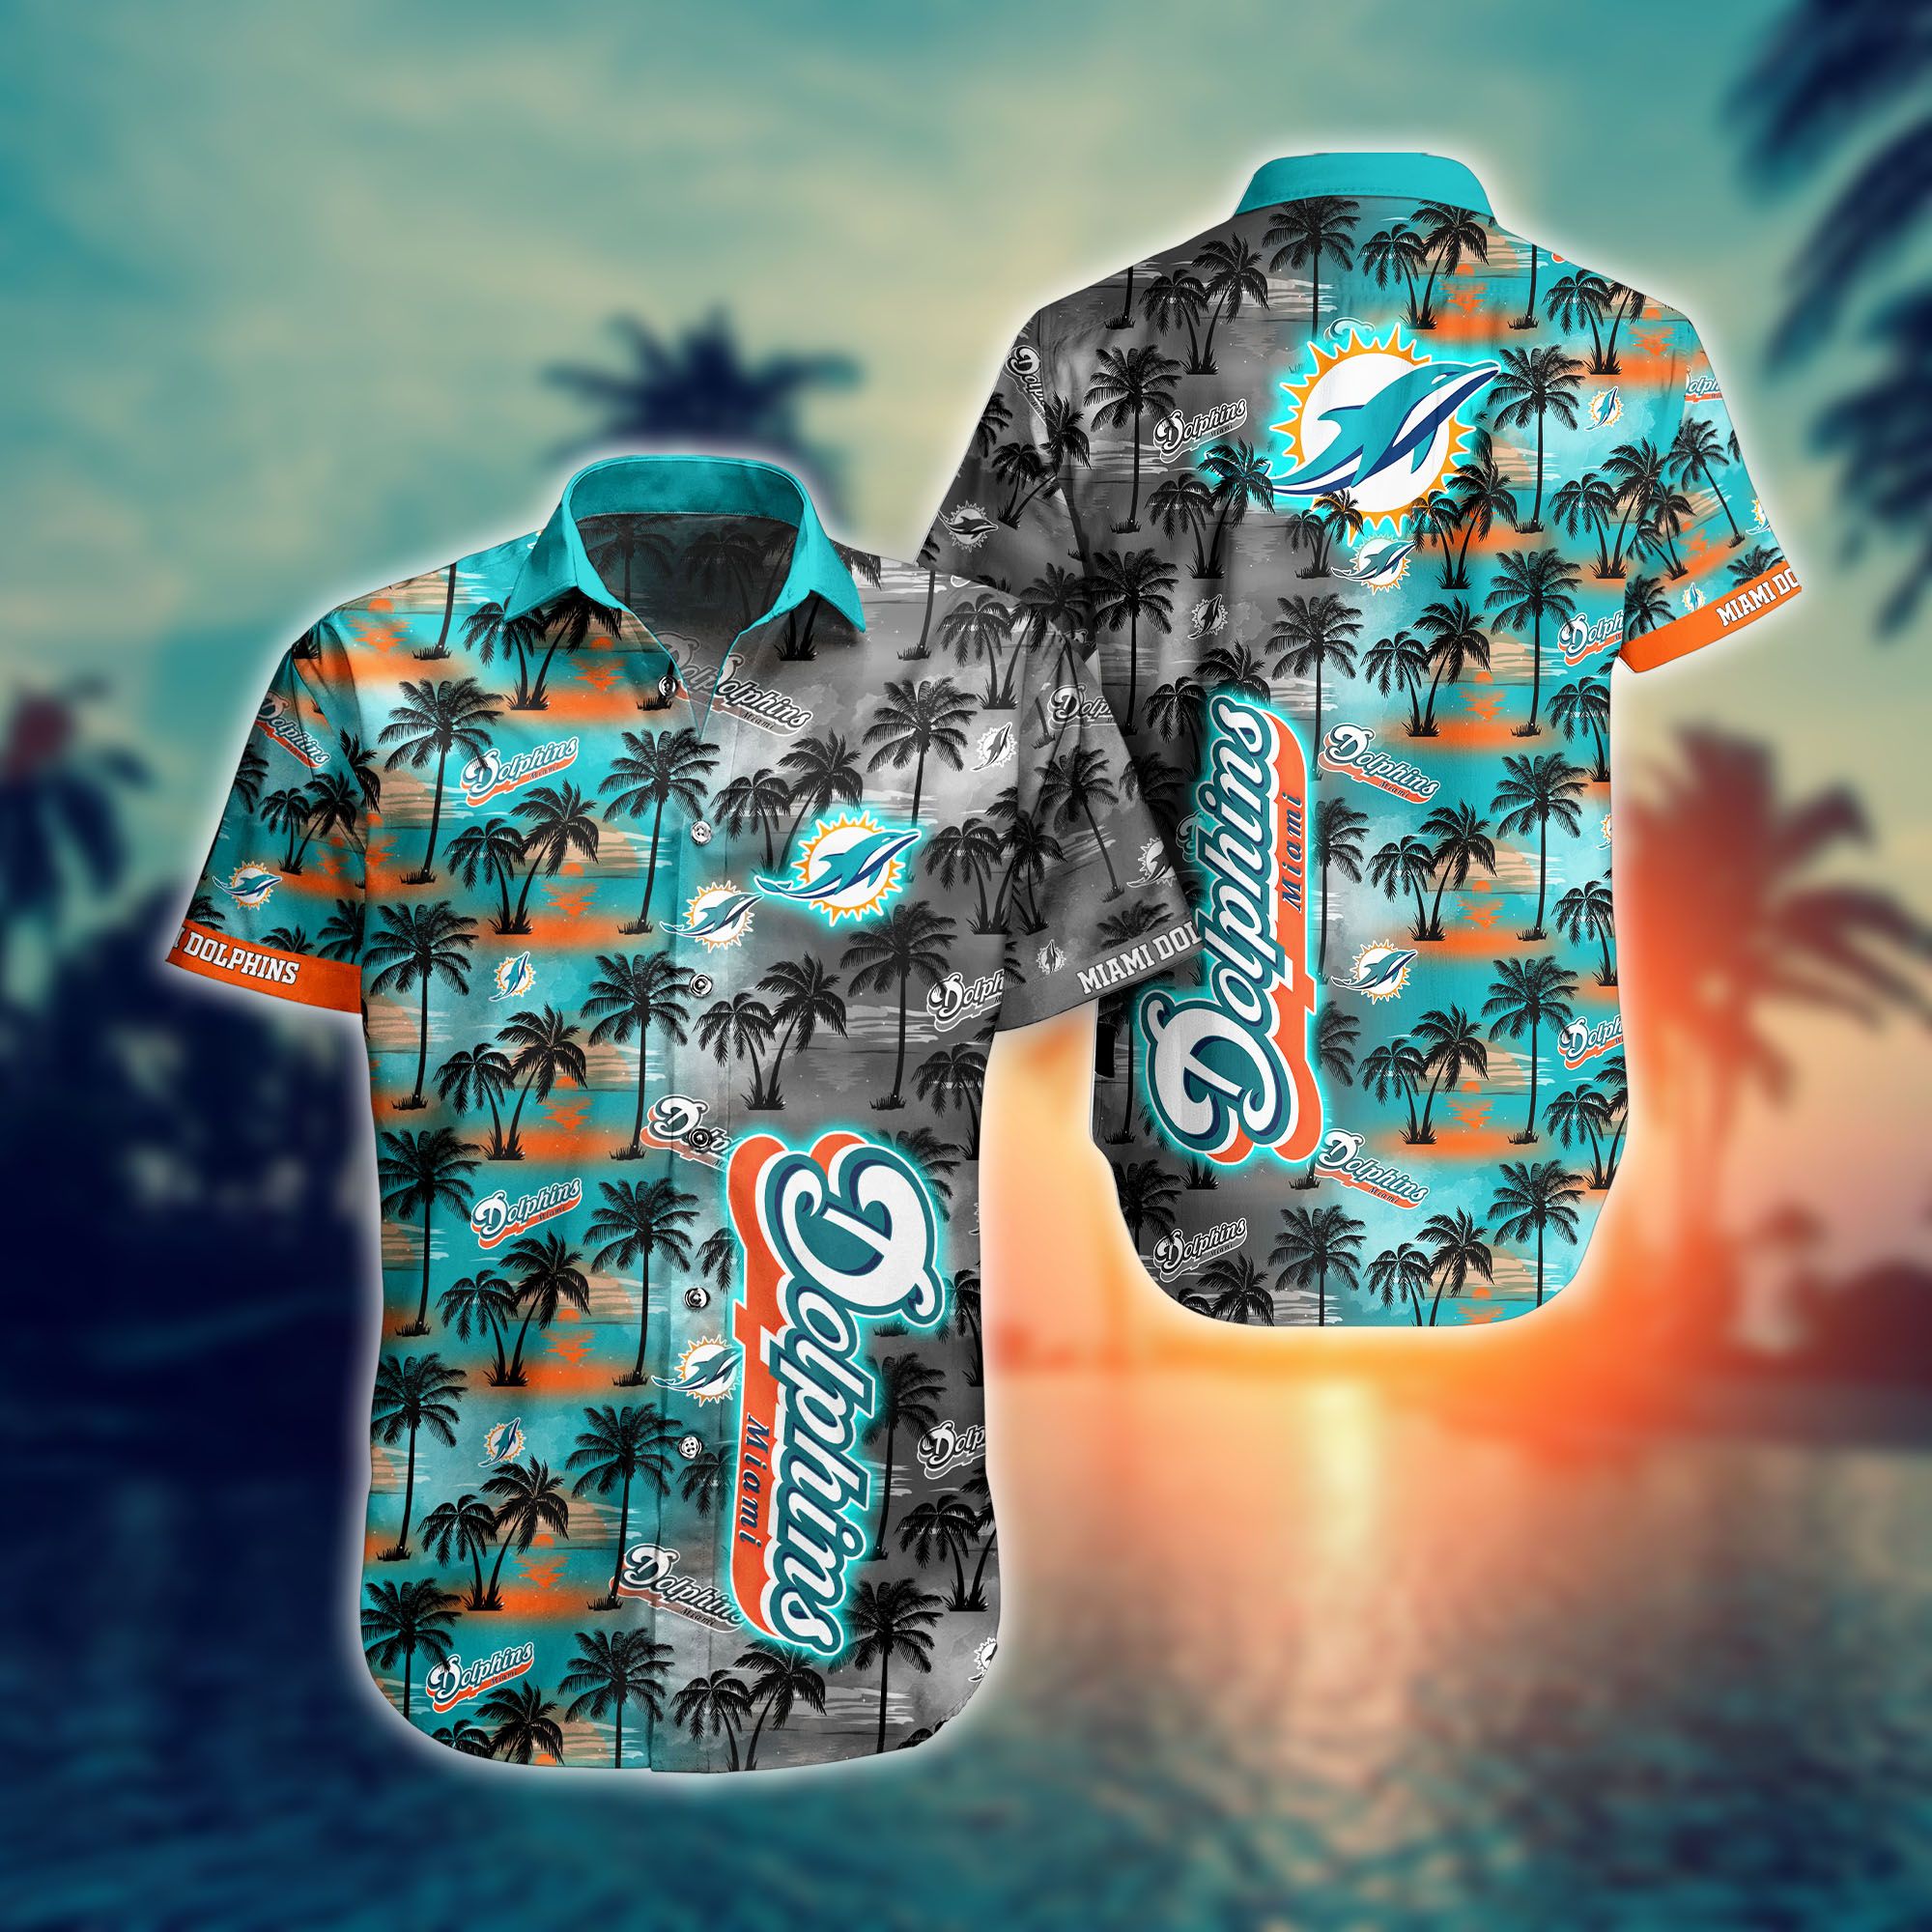 Miami Dolphins NFL Hawaiian Shirt